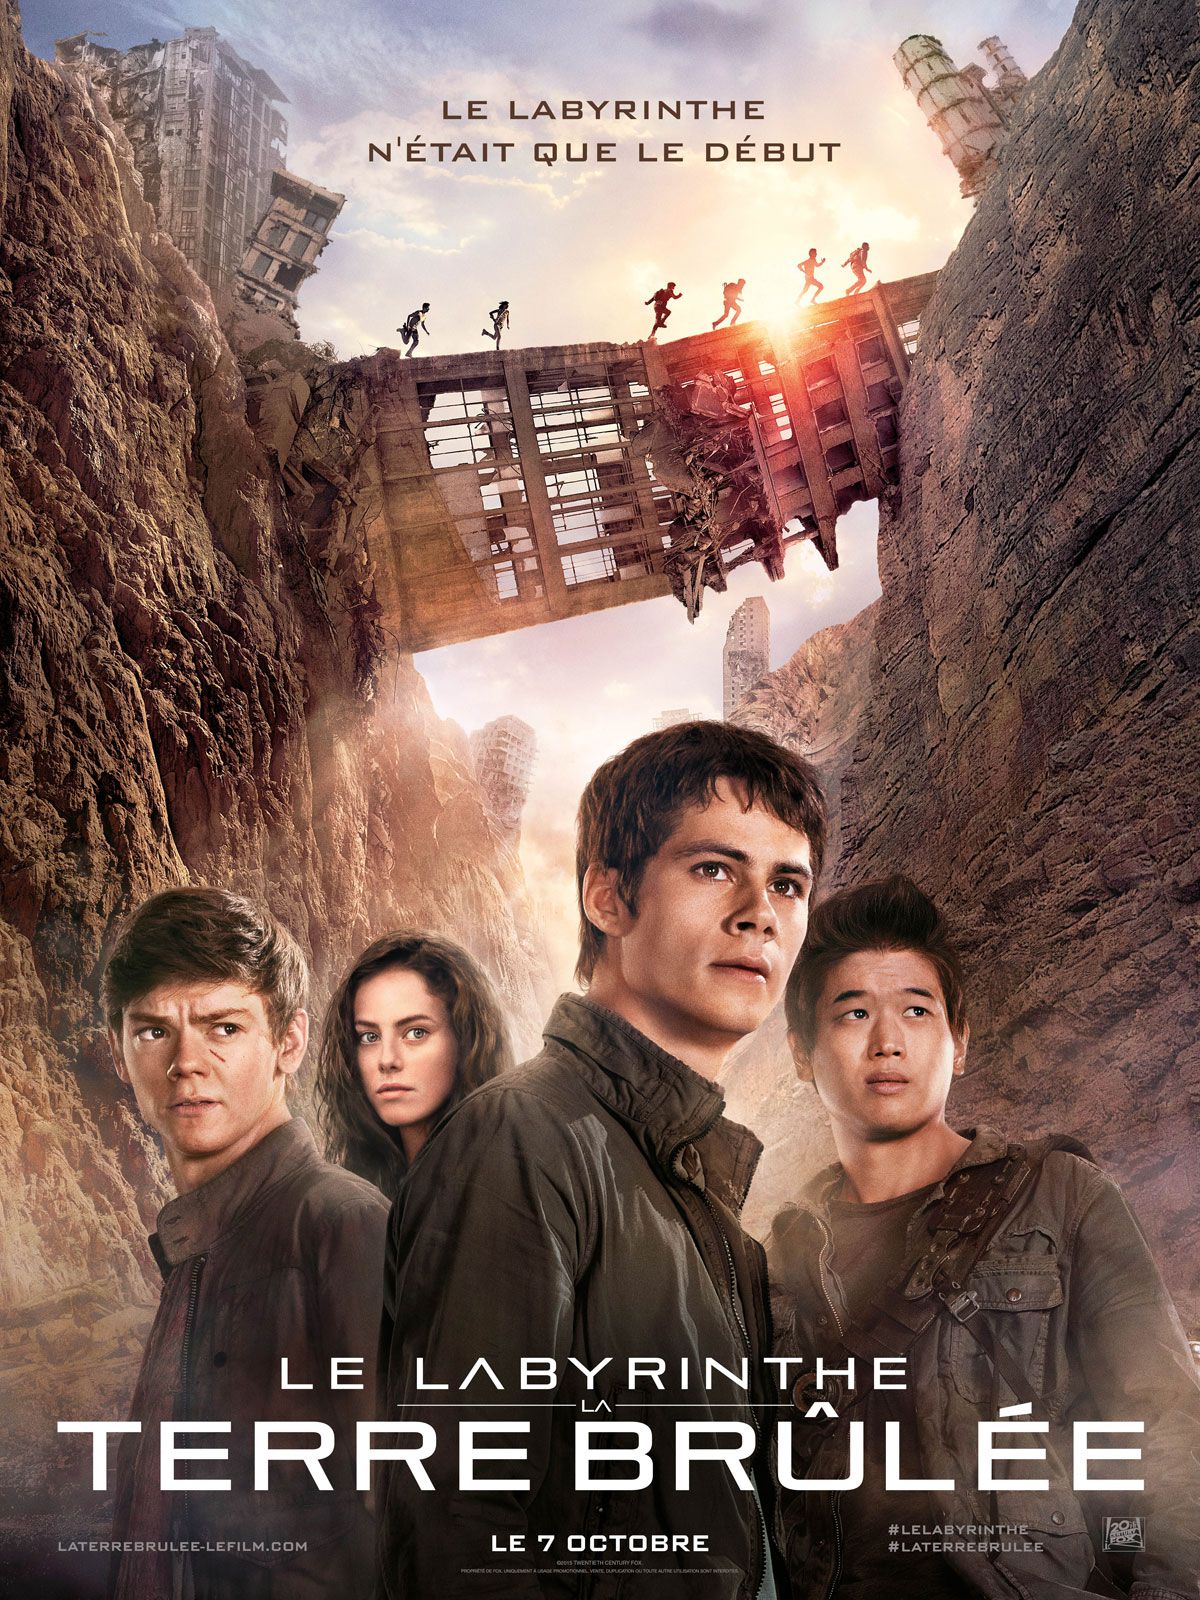 Le Labyrinthe : La Terre brûlée - Film (2015) streaming VF gratuit complet